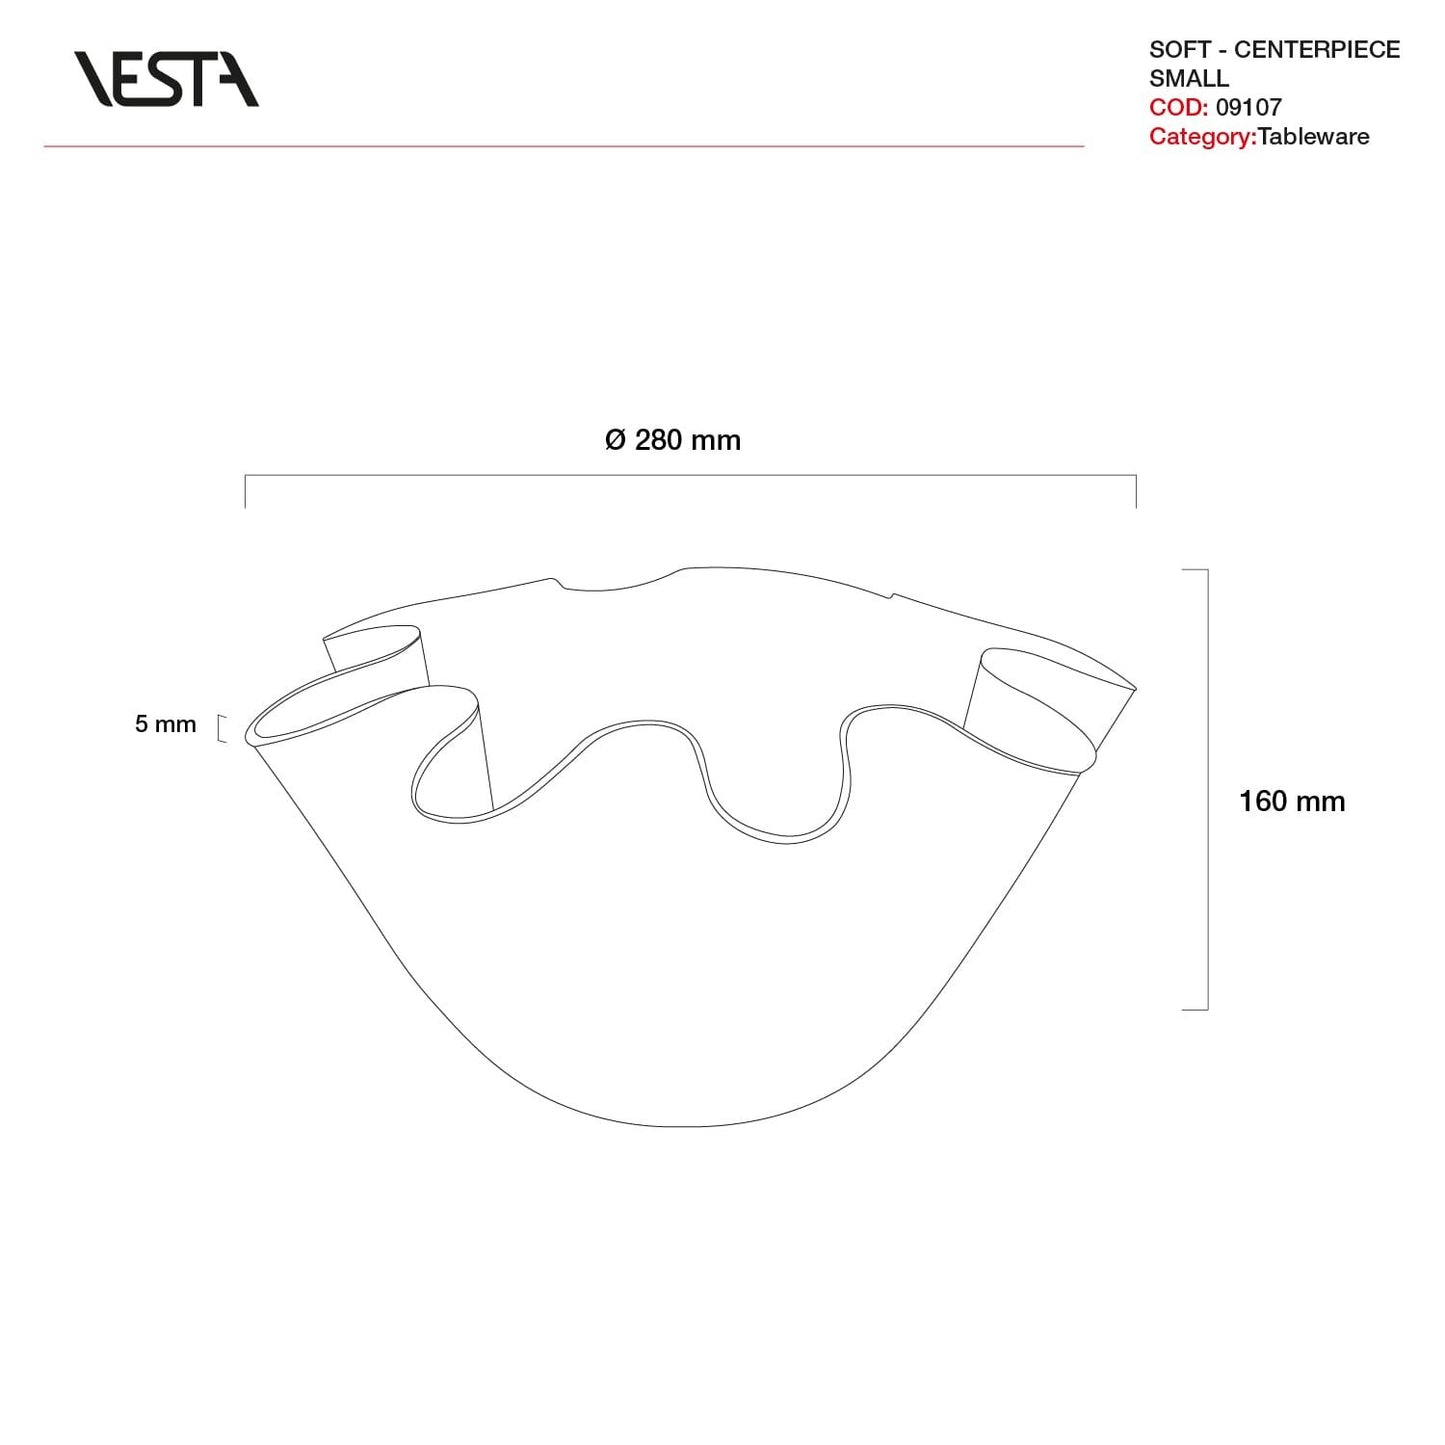 SOFT centerpiece vase holder - VESTA collection